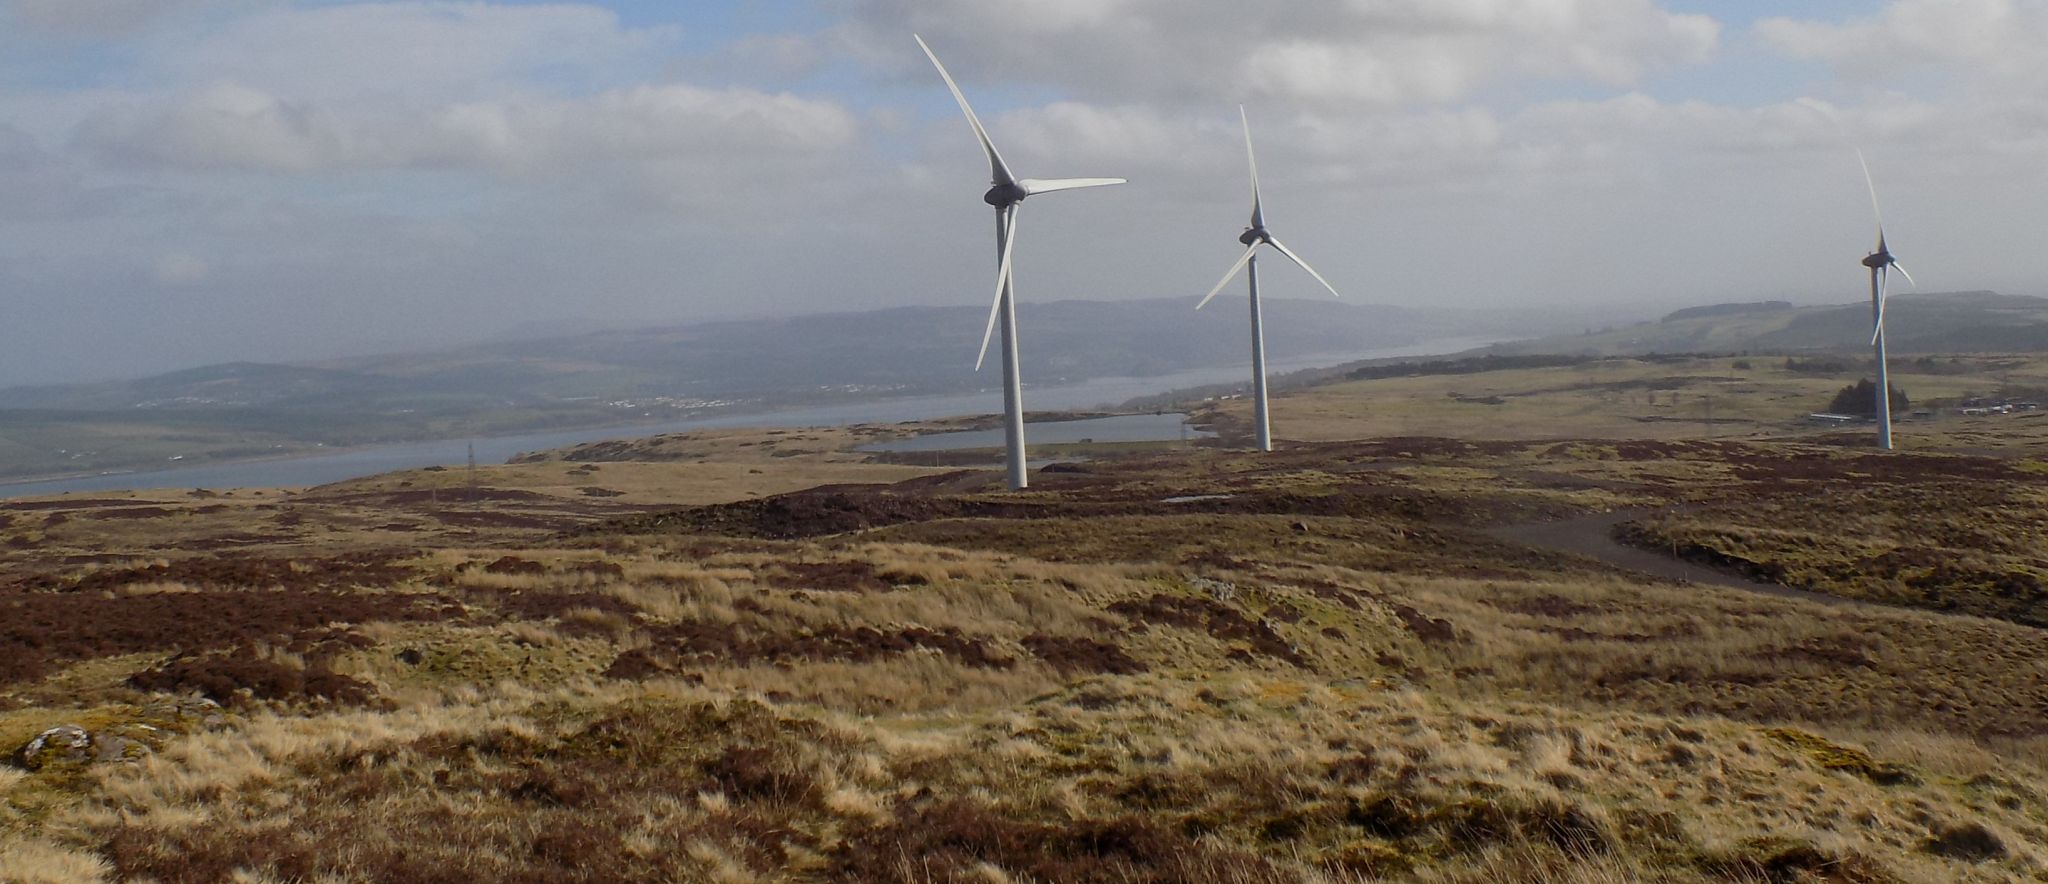 Wind turbine farm on Corlic Hill